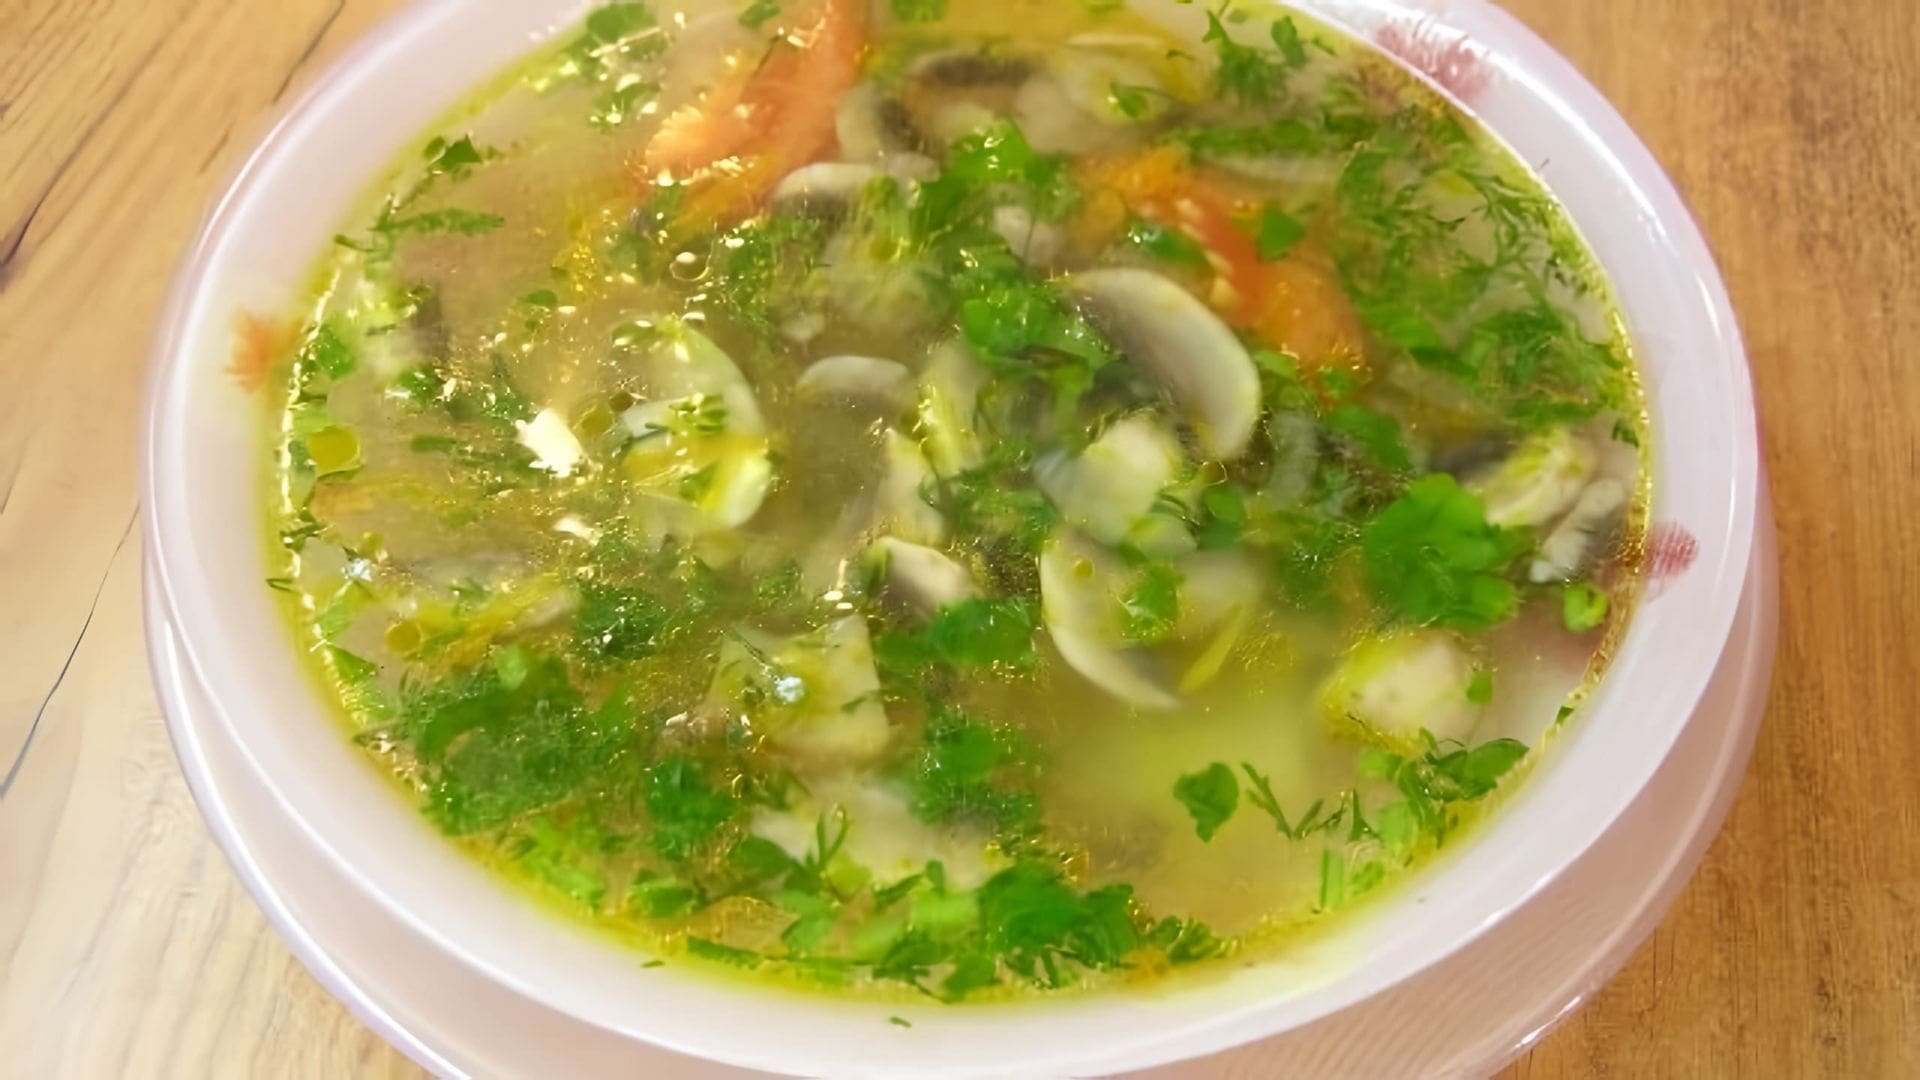 В данном видео демонстрируется процесс приготовления постного картофельного супа с грибами по рецепту из книги "Полезная и вкусная постная кухня"